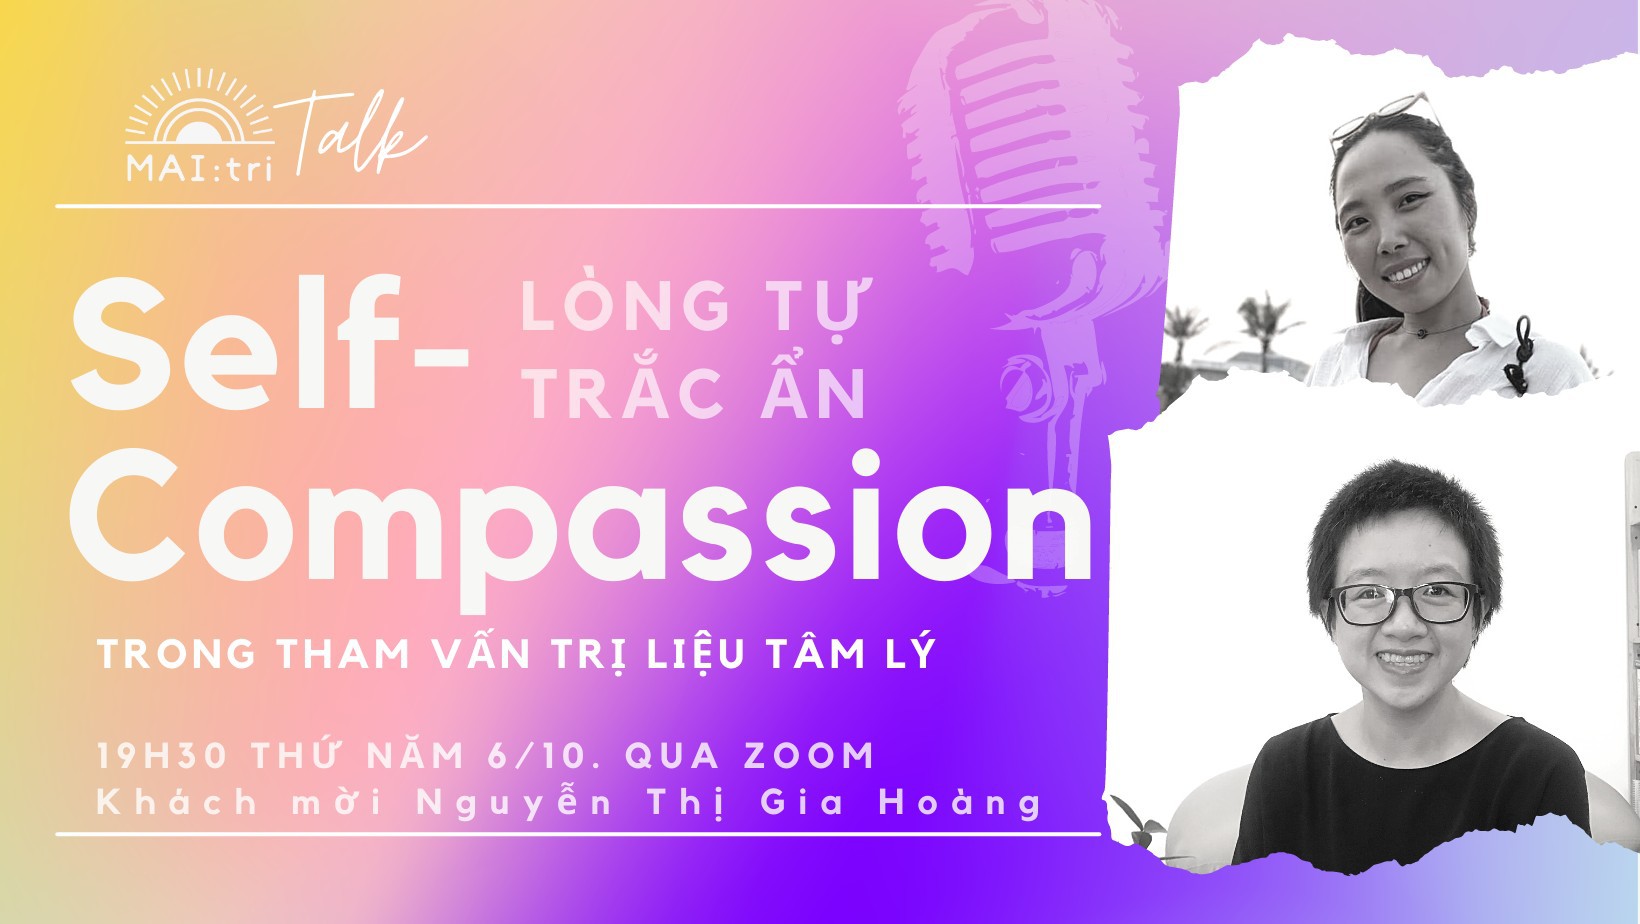 LIVE Talk - Lòng Tự Trắc Ẩn Trong Tham Vấn Trị Liệu Tâm Lý - cùng Nguyễn Thị Gia Hoàng